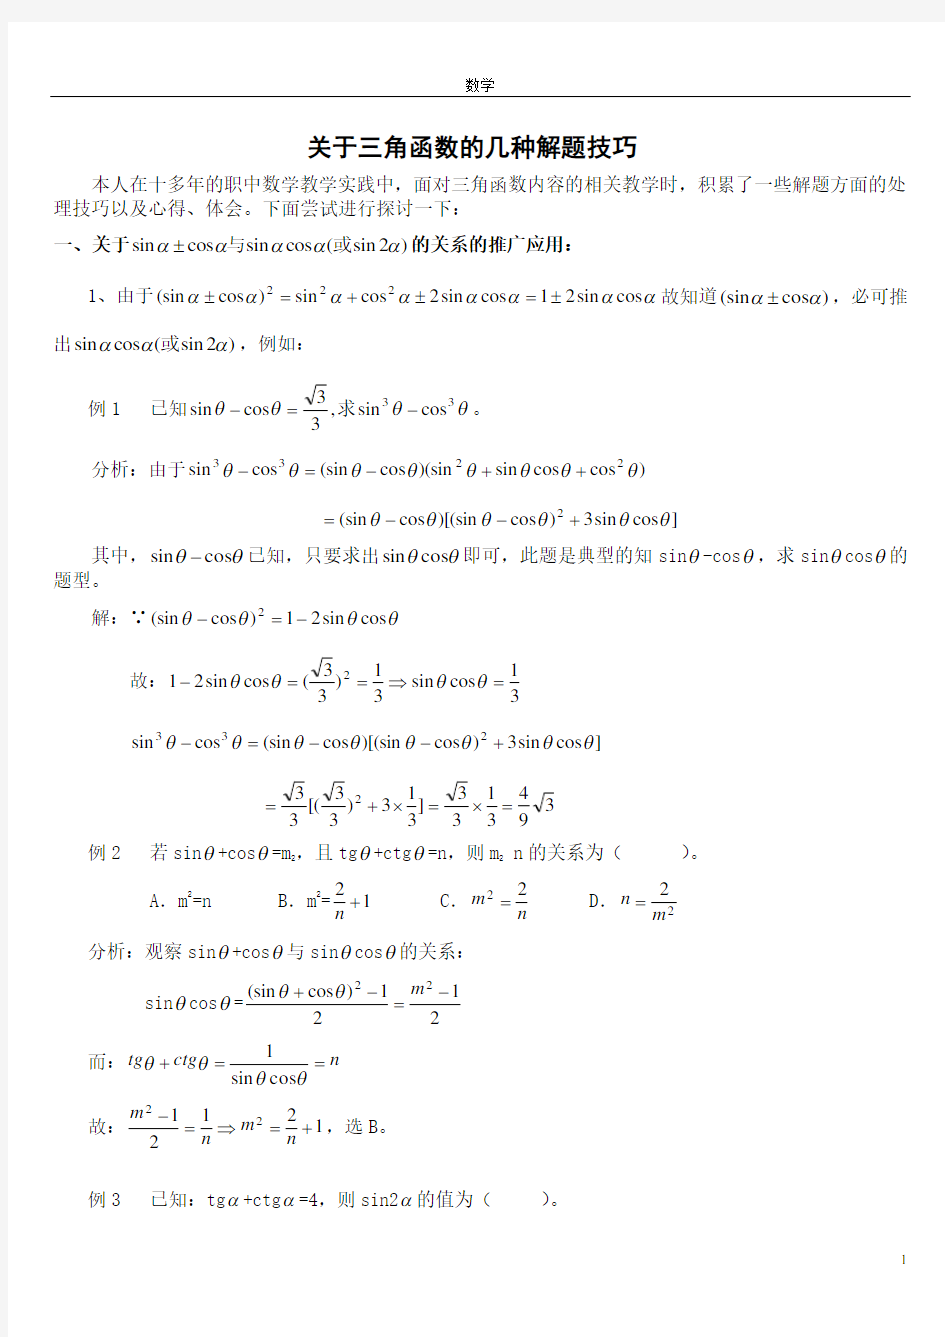 (完整版)高中数学三角函数解题技巧和公式(已整理)